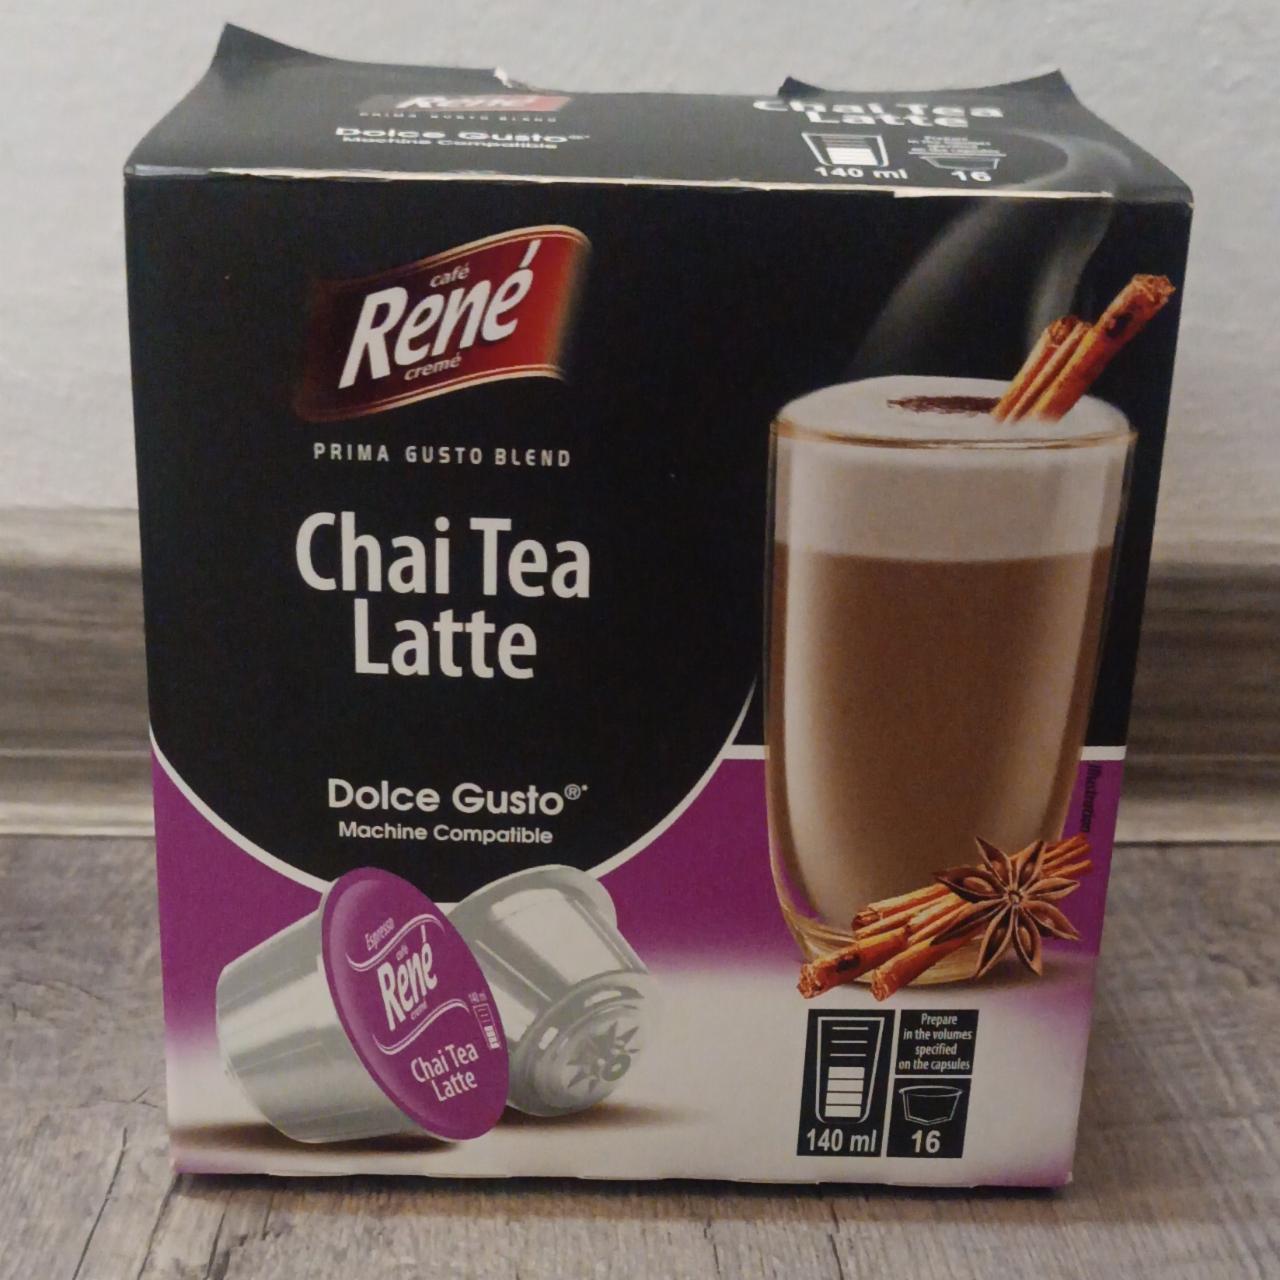 Fotografie - Chai Tea Latte René café